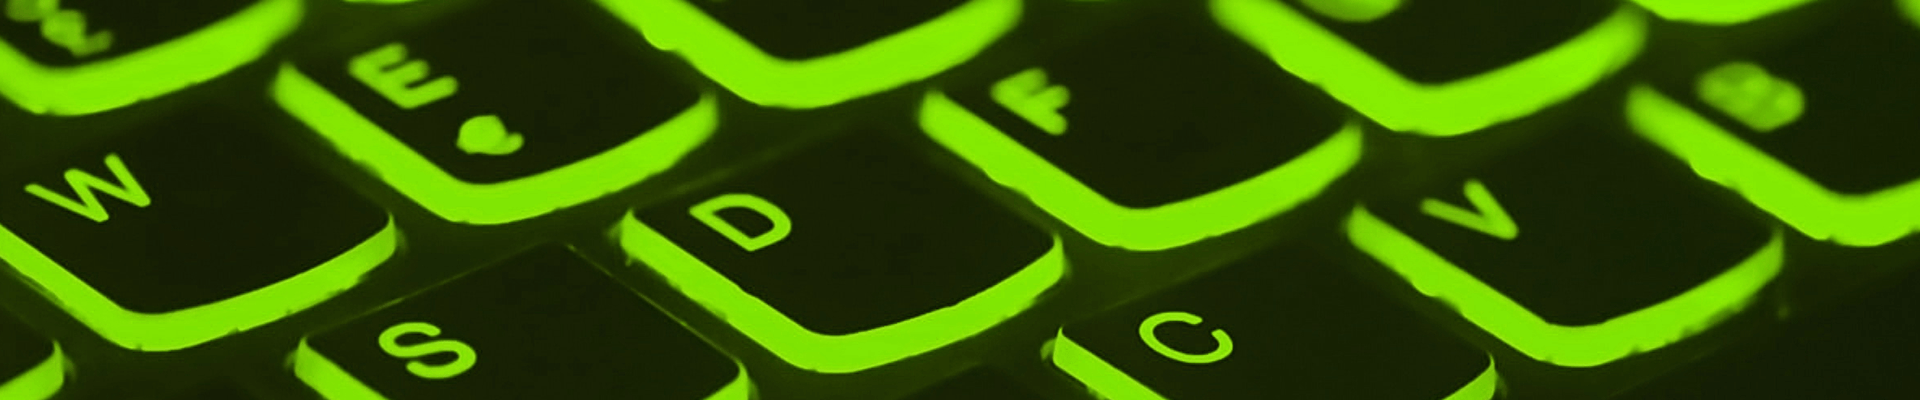 green lit keyboard cybersecurity